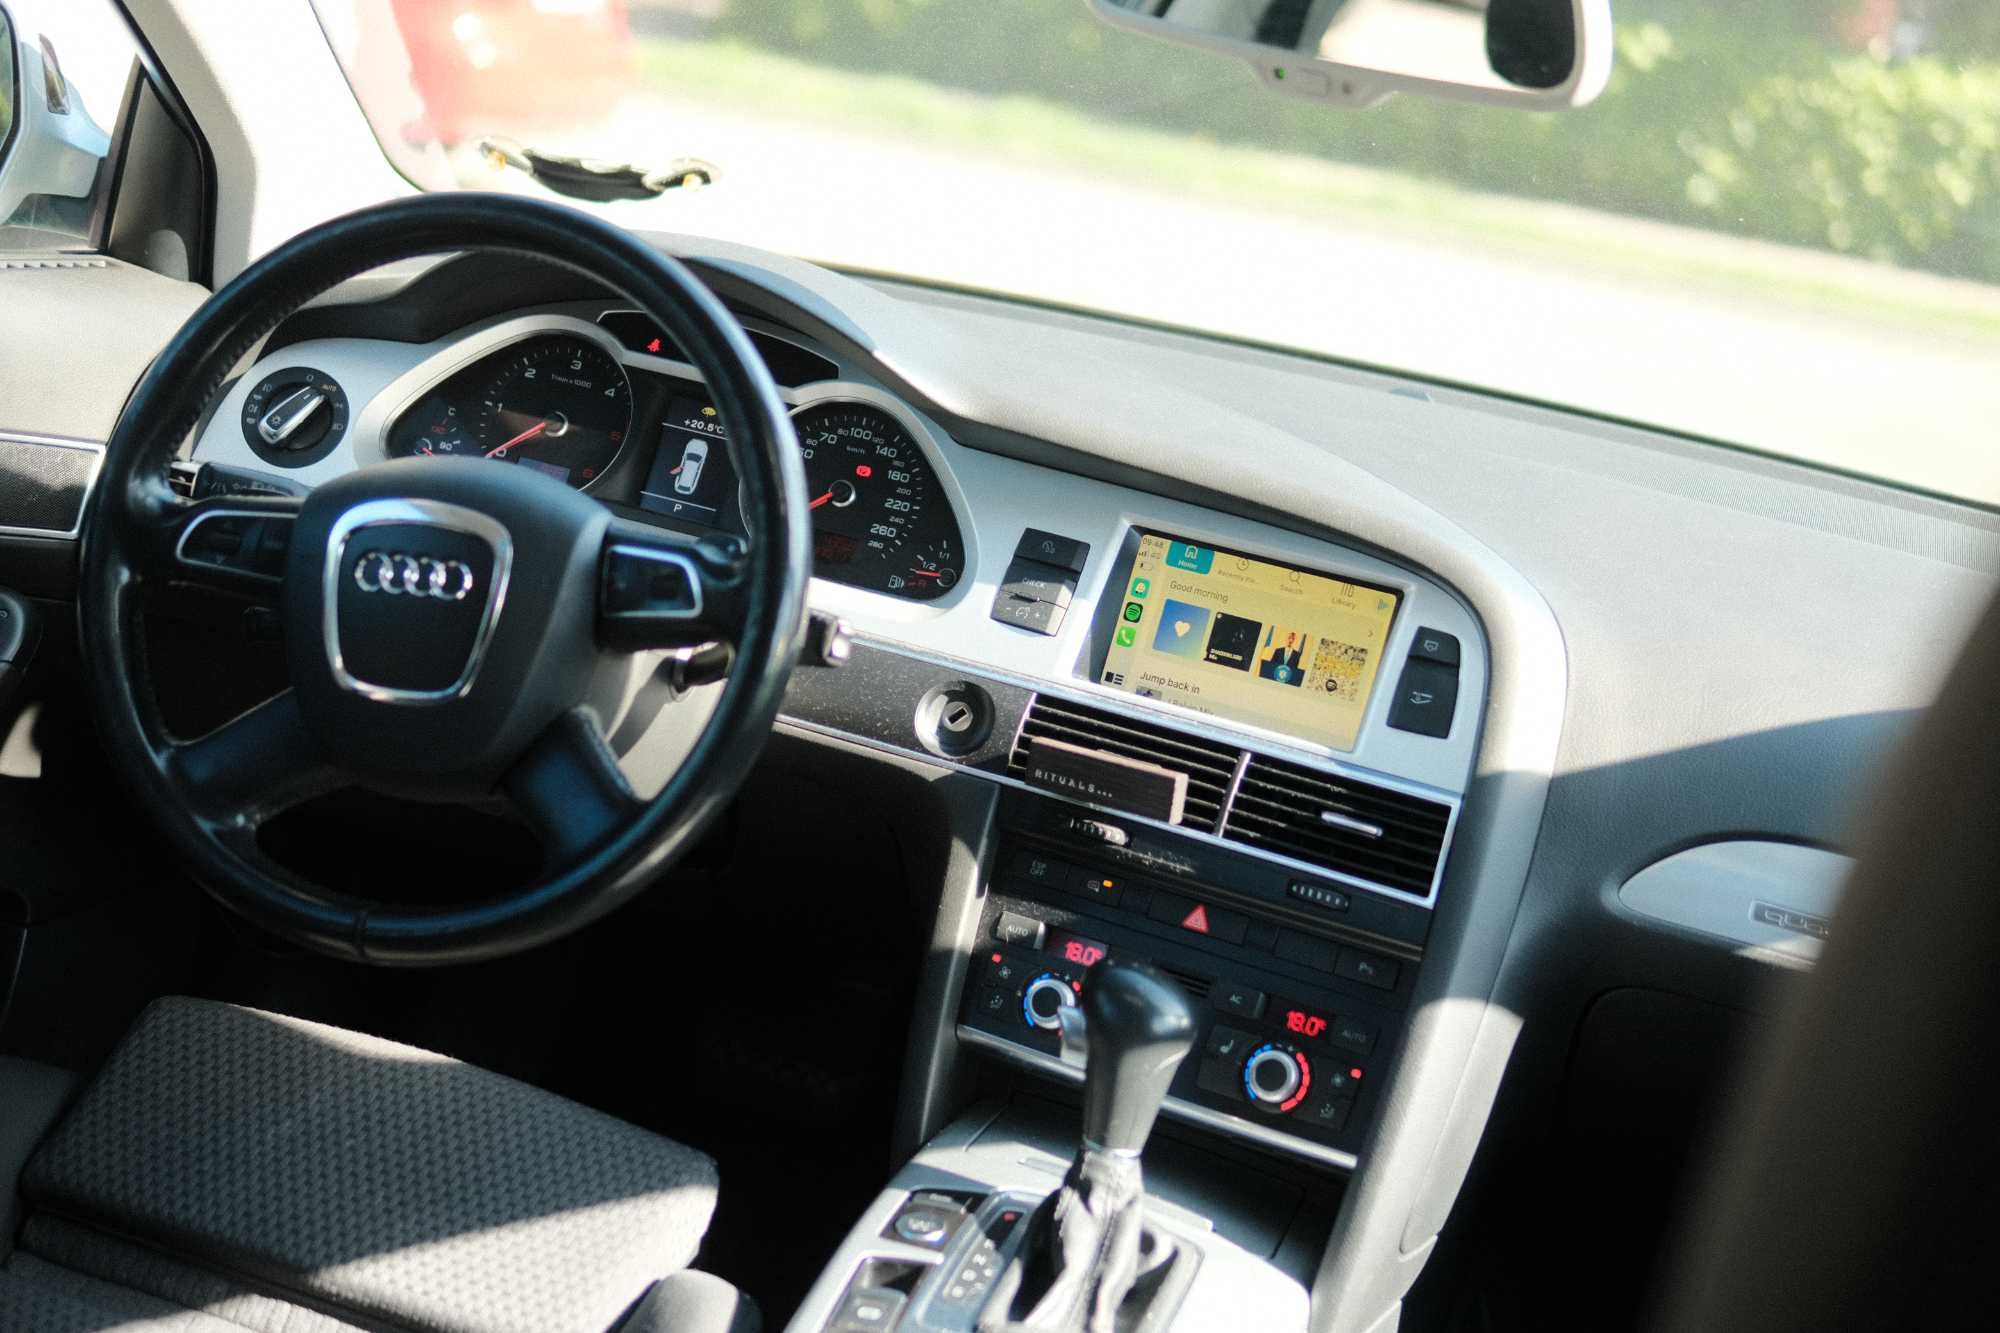 Audi A6 3.0 TDI Quattro Tiptronic Air Suspension